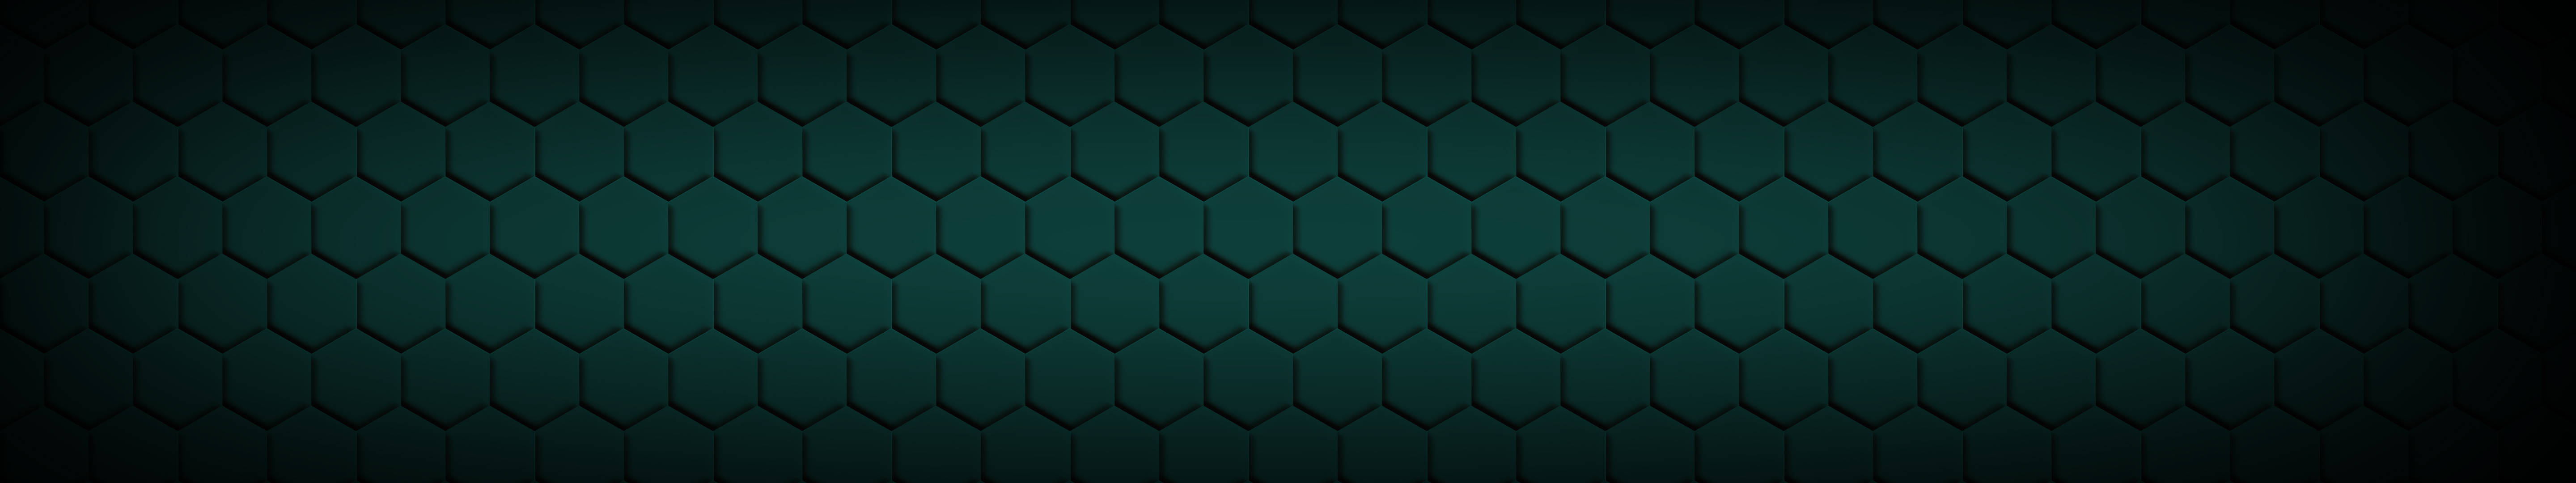 Green Hexagonal Prisms Three Screen Wallpaper